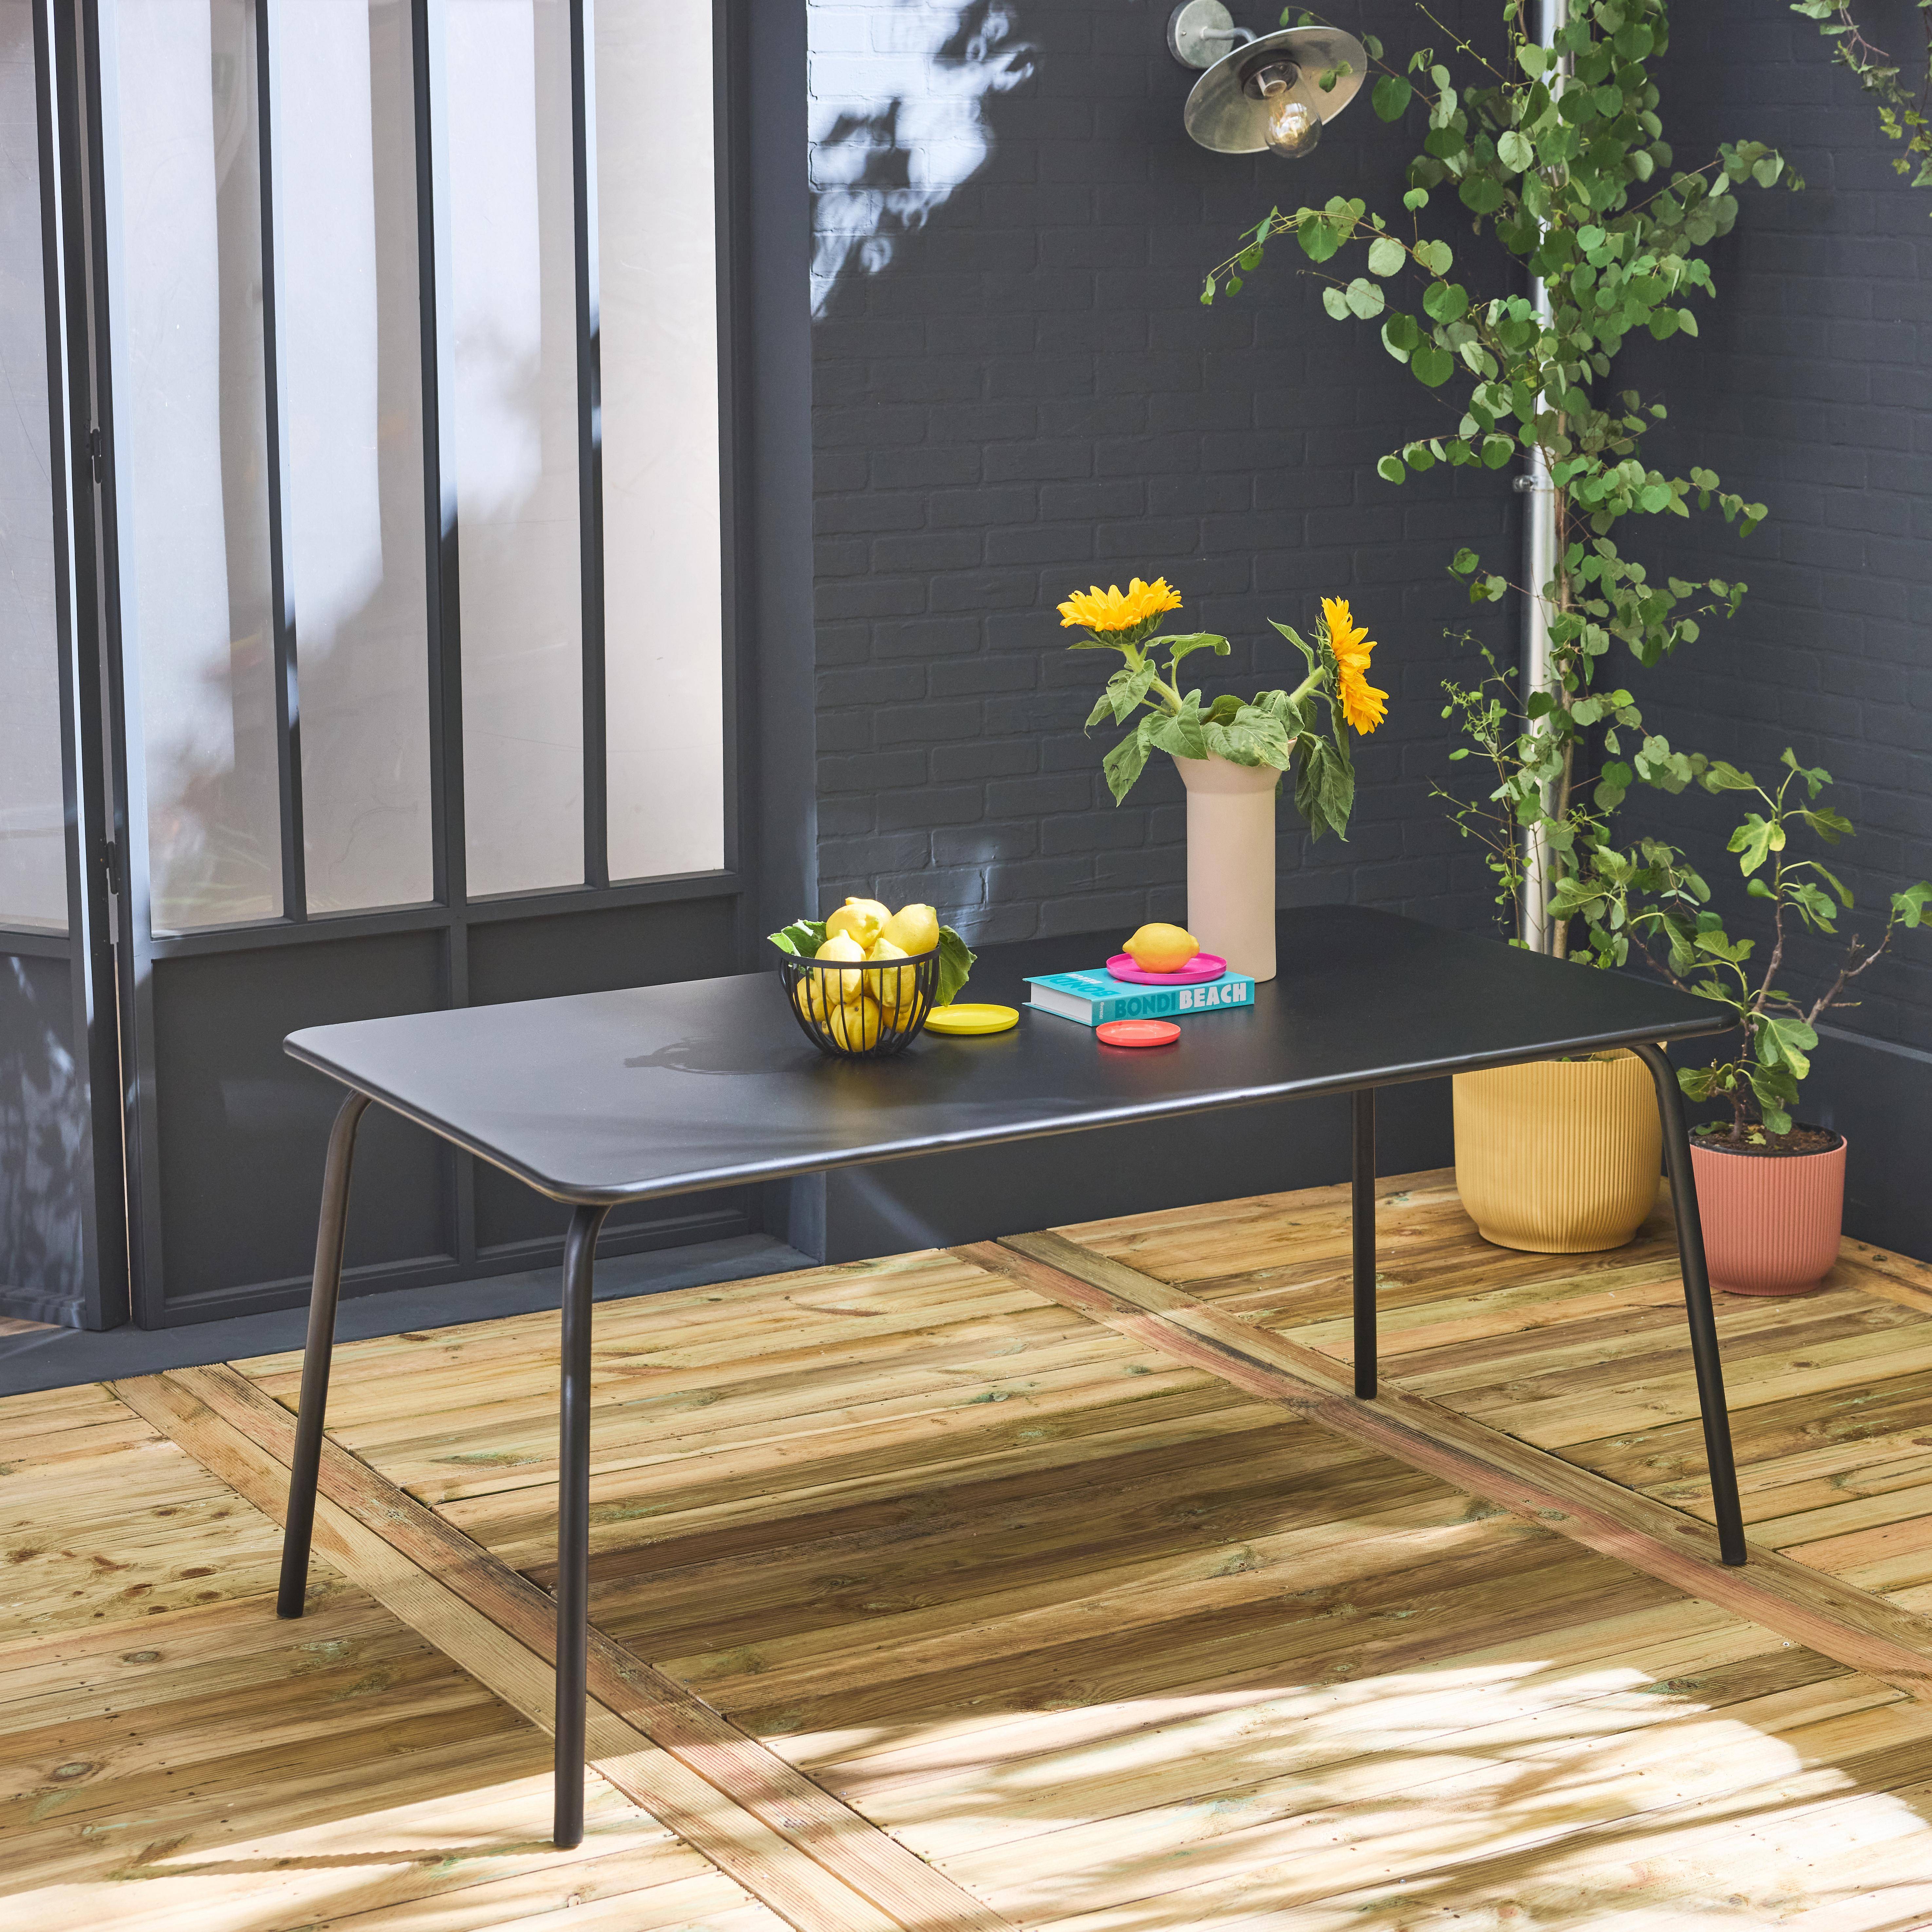 Table de jardin en métal (acier peint par électrophorèse avec protection antirouille) 160x90cm coloris noir,sweeek,Photo2